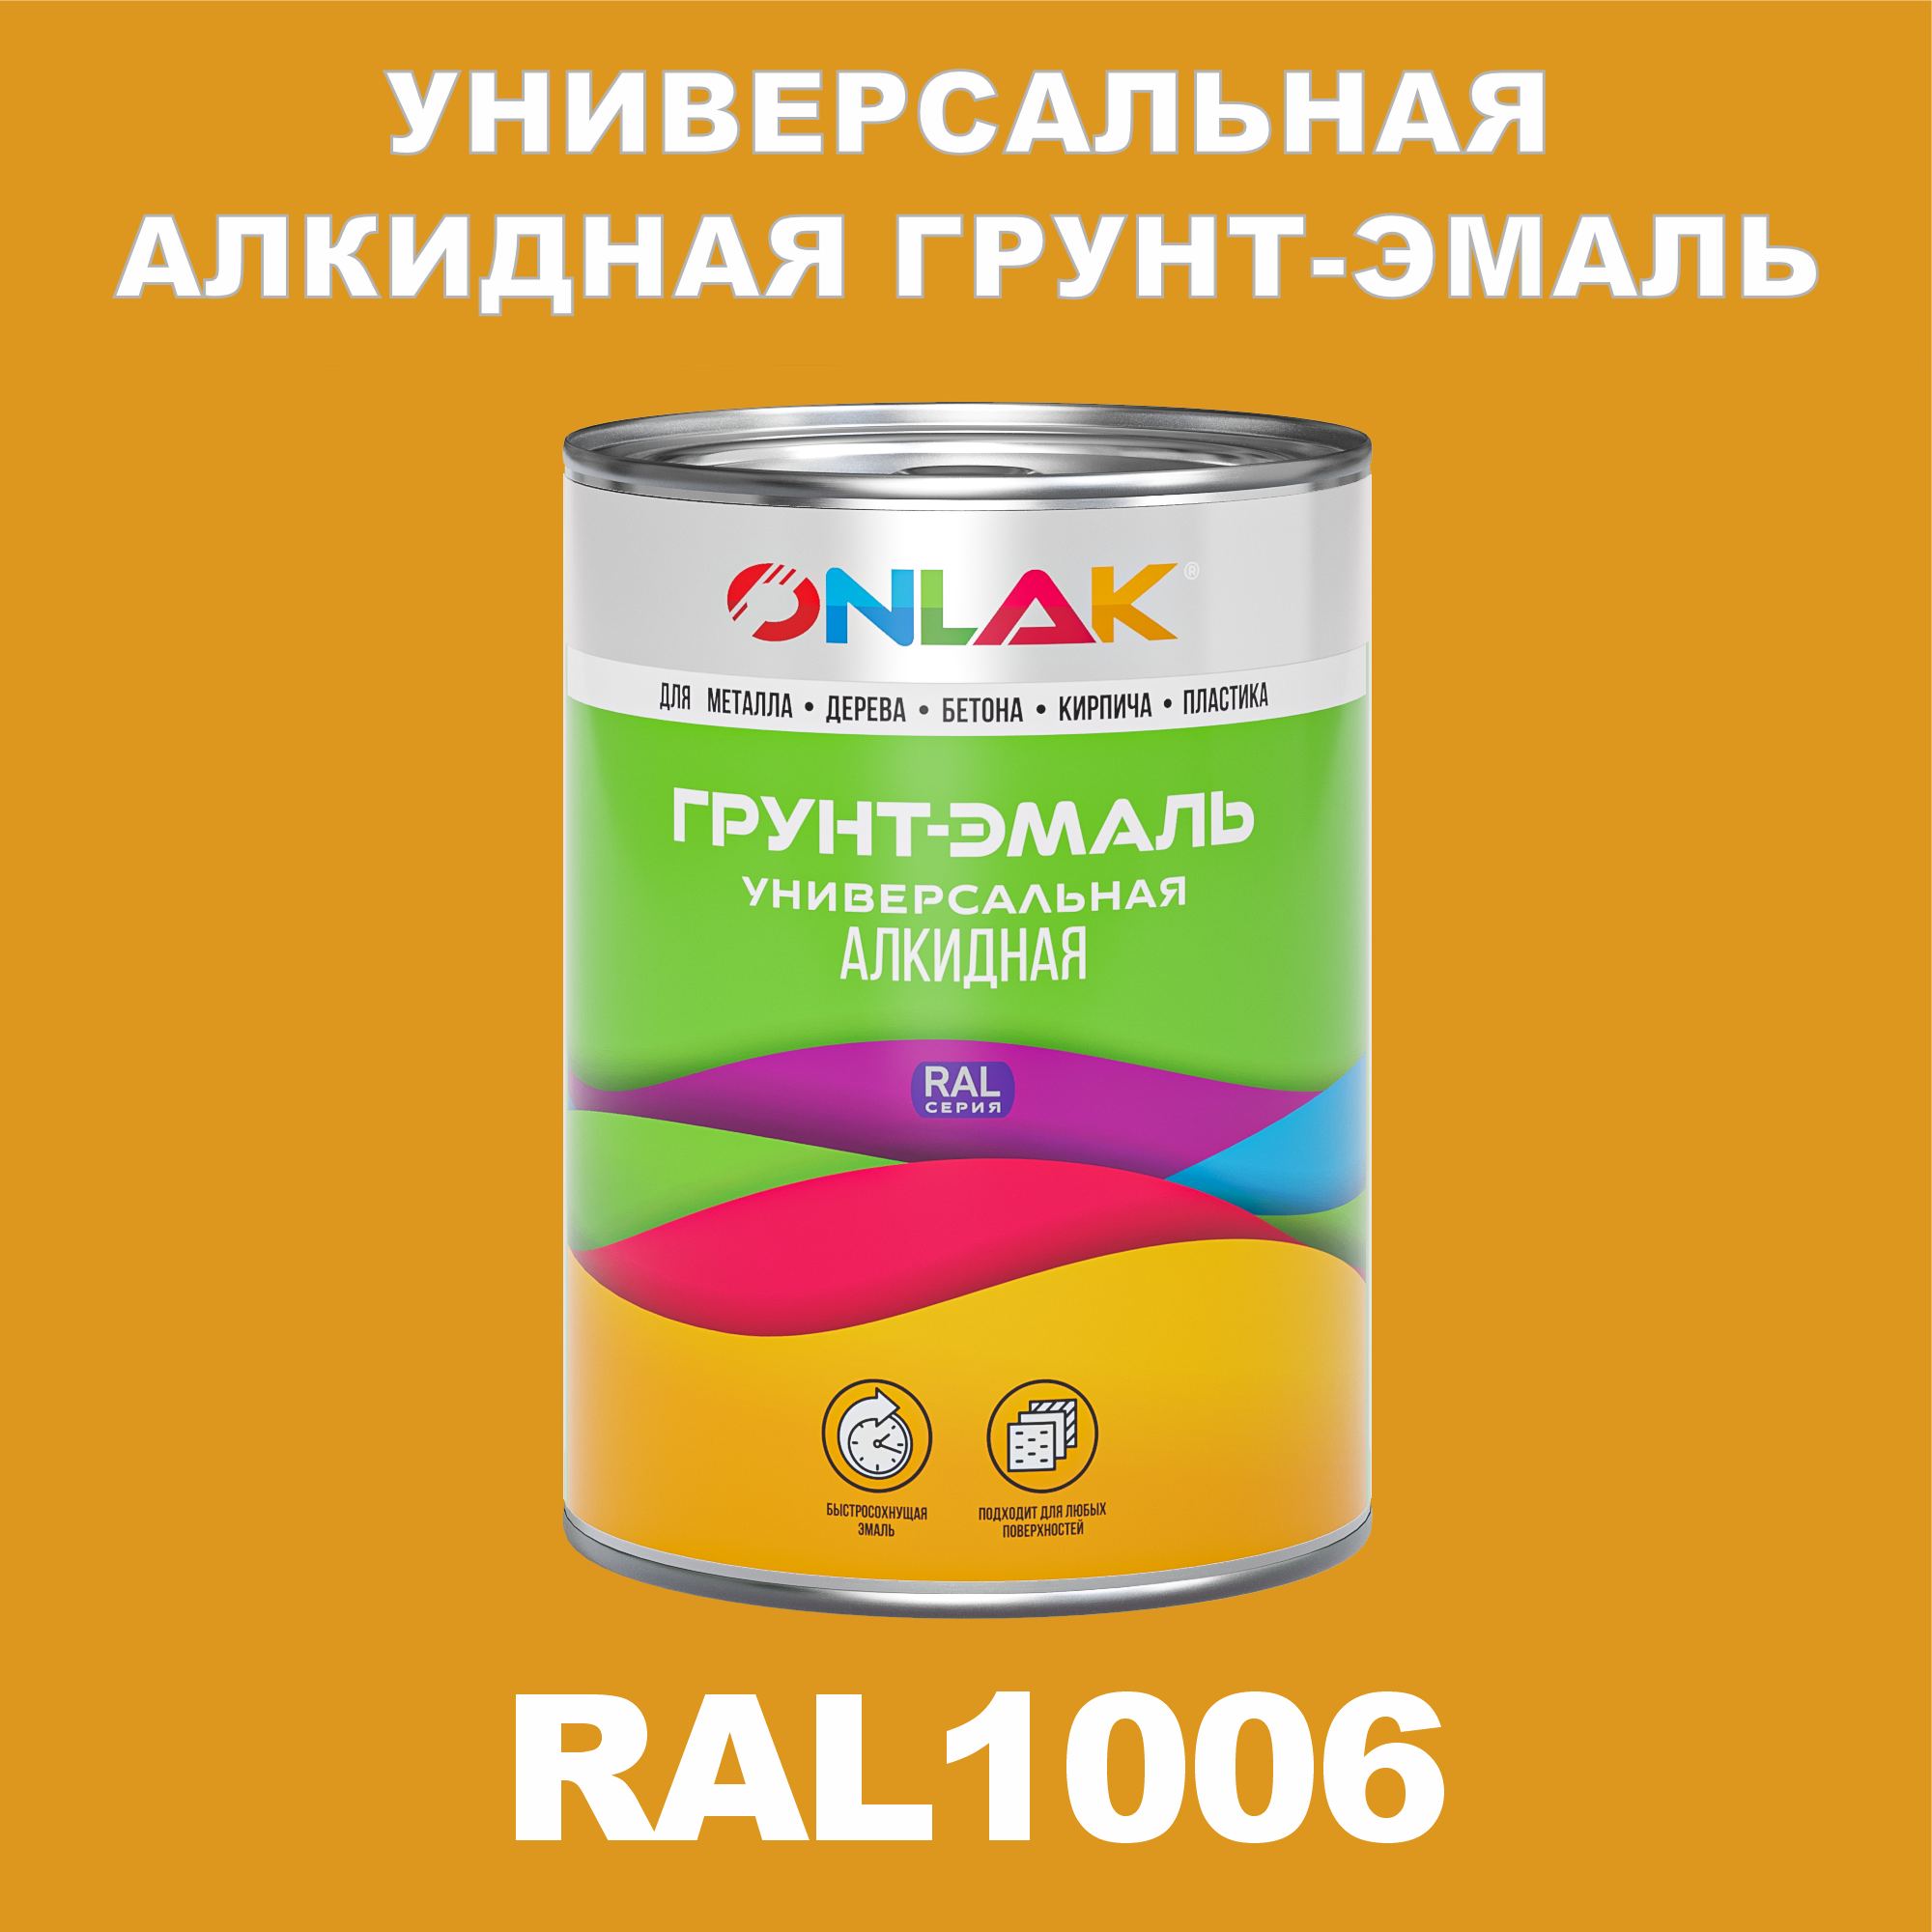 Грунт-эмаль ONLAK 1К RAL1006 антикоррозионная алкидная по металлу по ржавчине 1 кг